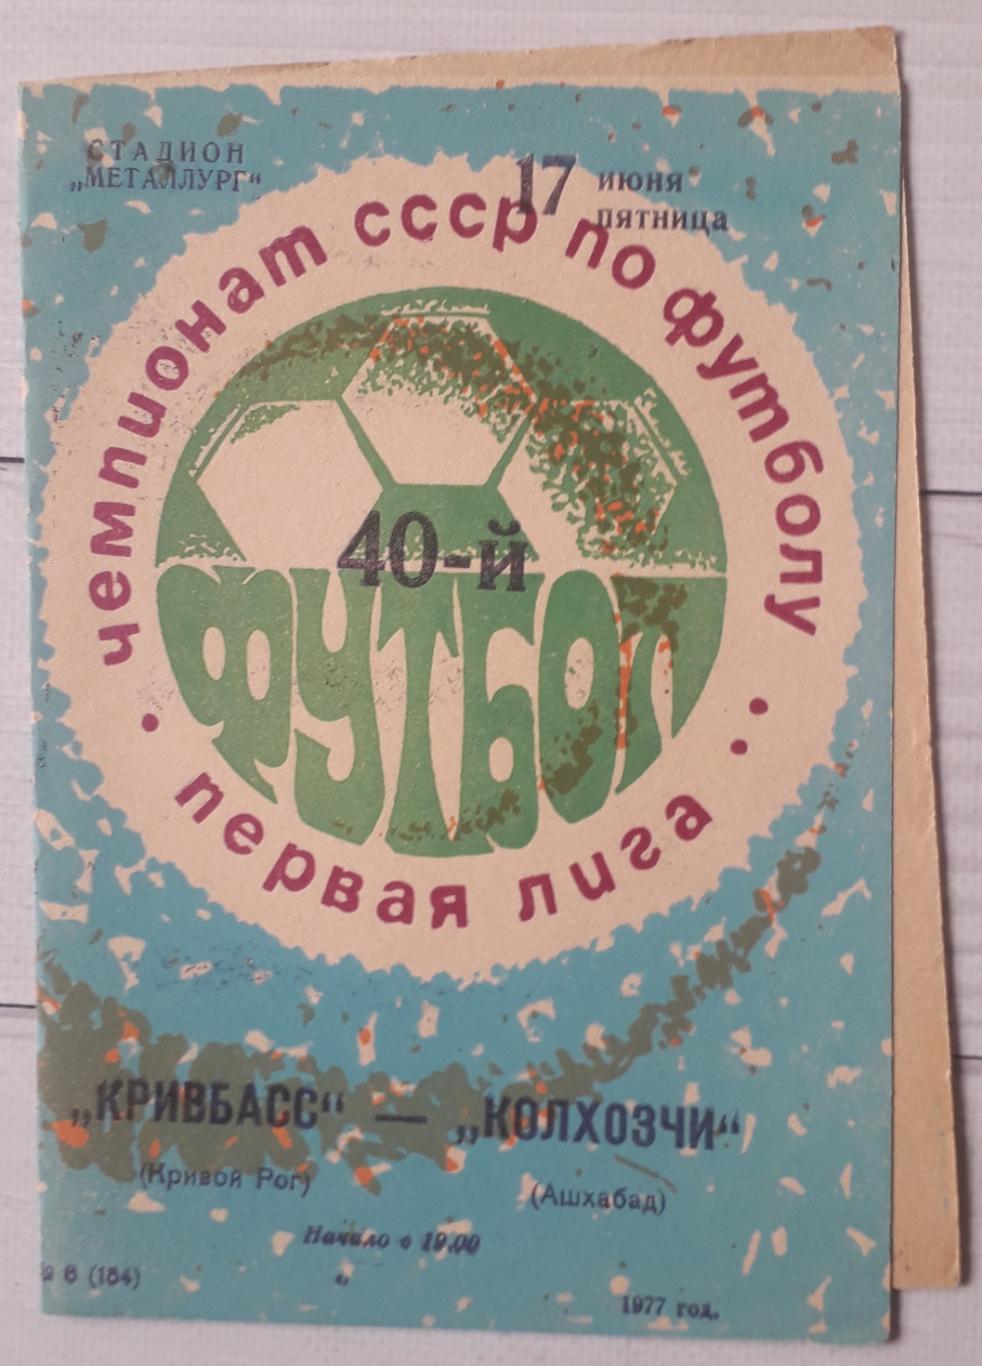 Кривбас Кривий Ріг - Колхозчи Ашхабад 17.06.1977.